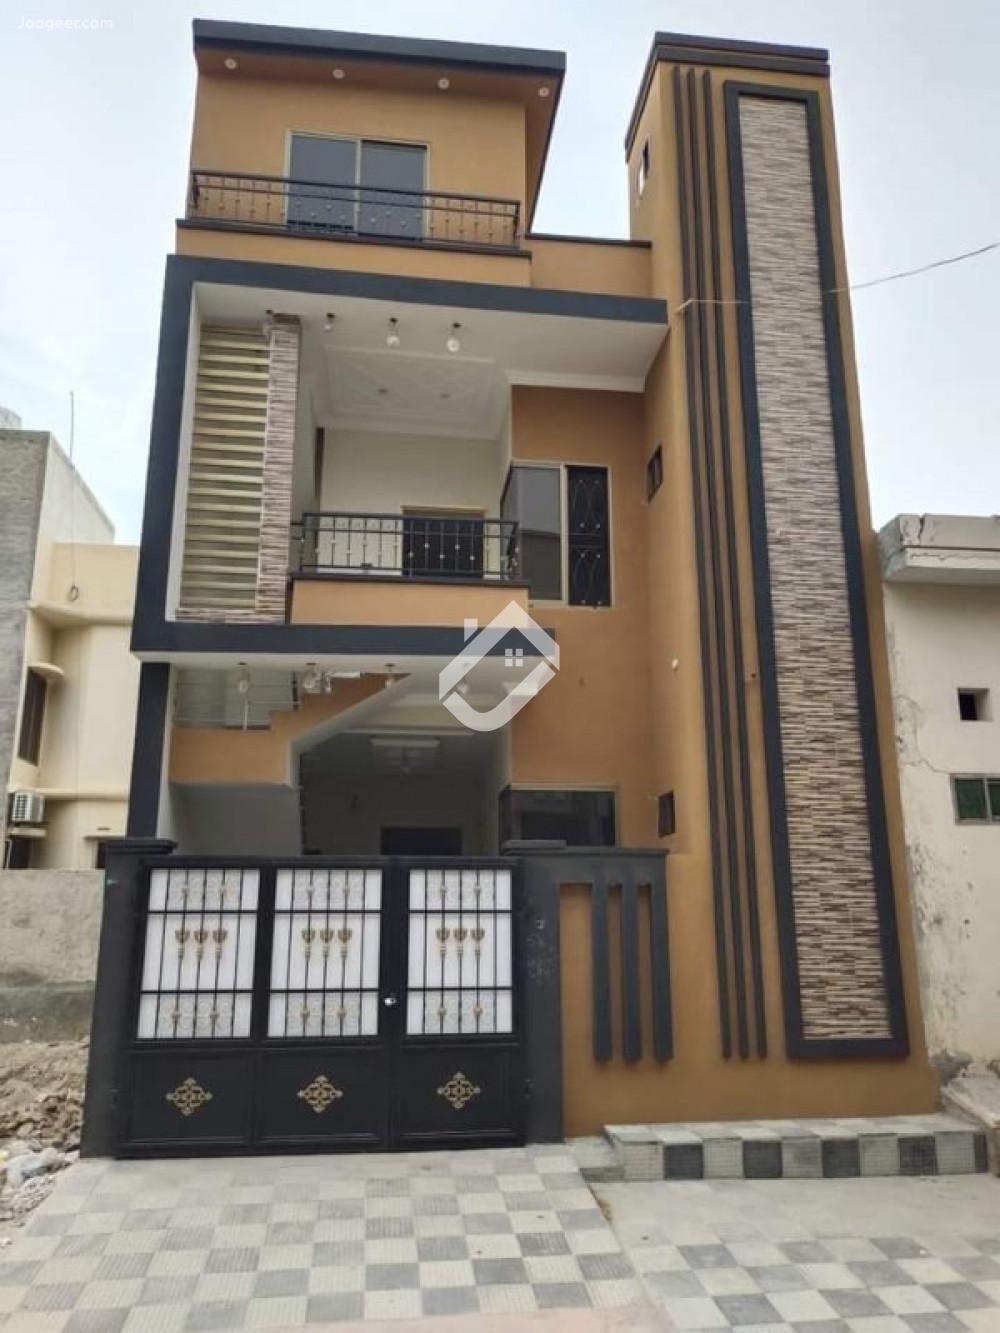 Main image 3 Marla Double Storey House For Sale In Allama Iqbal Avenue Civil Hospital Allama Iqbal Avenue, Bahawalpur